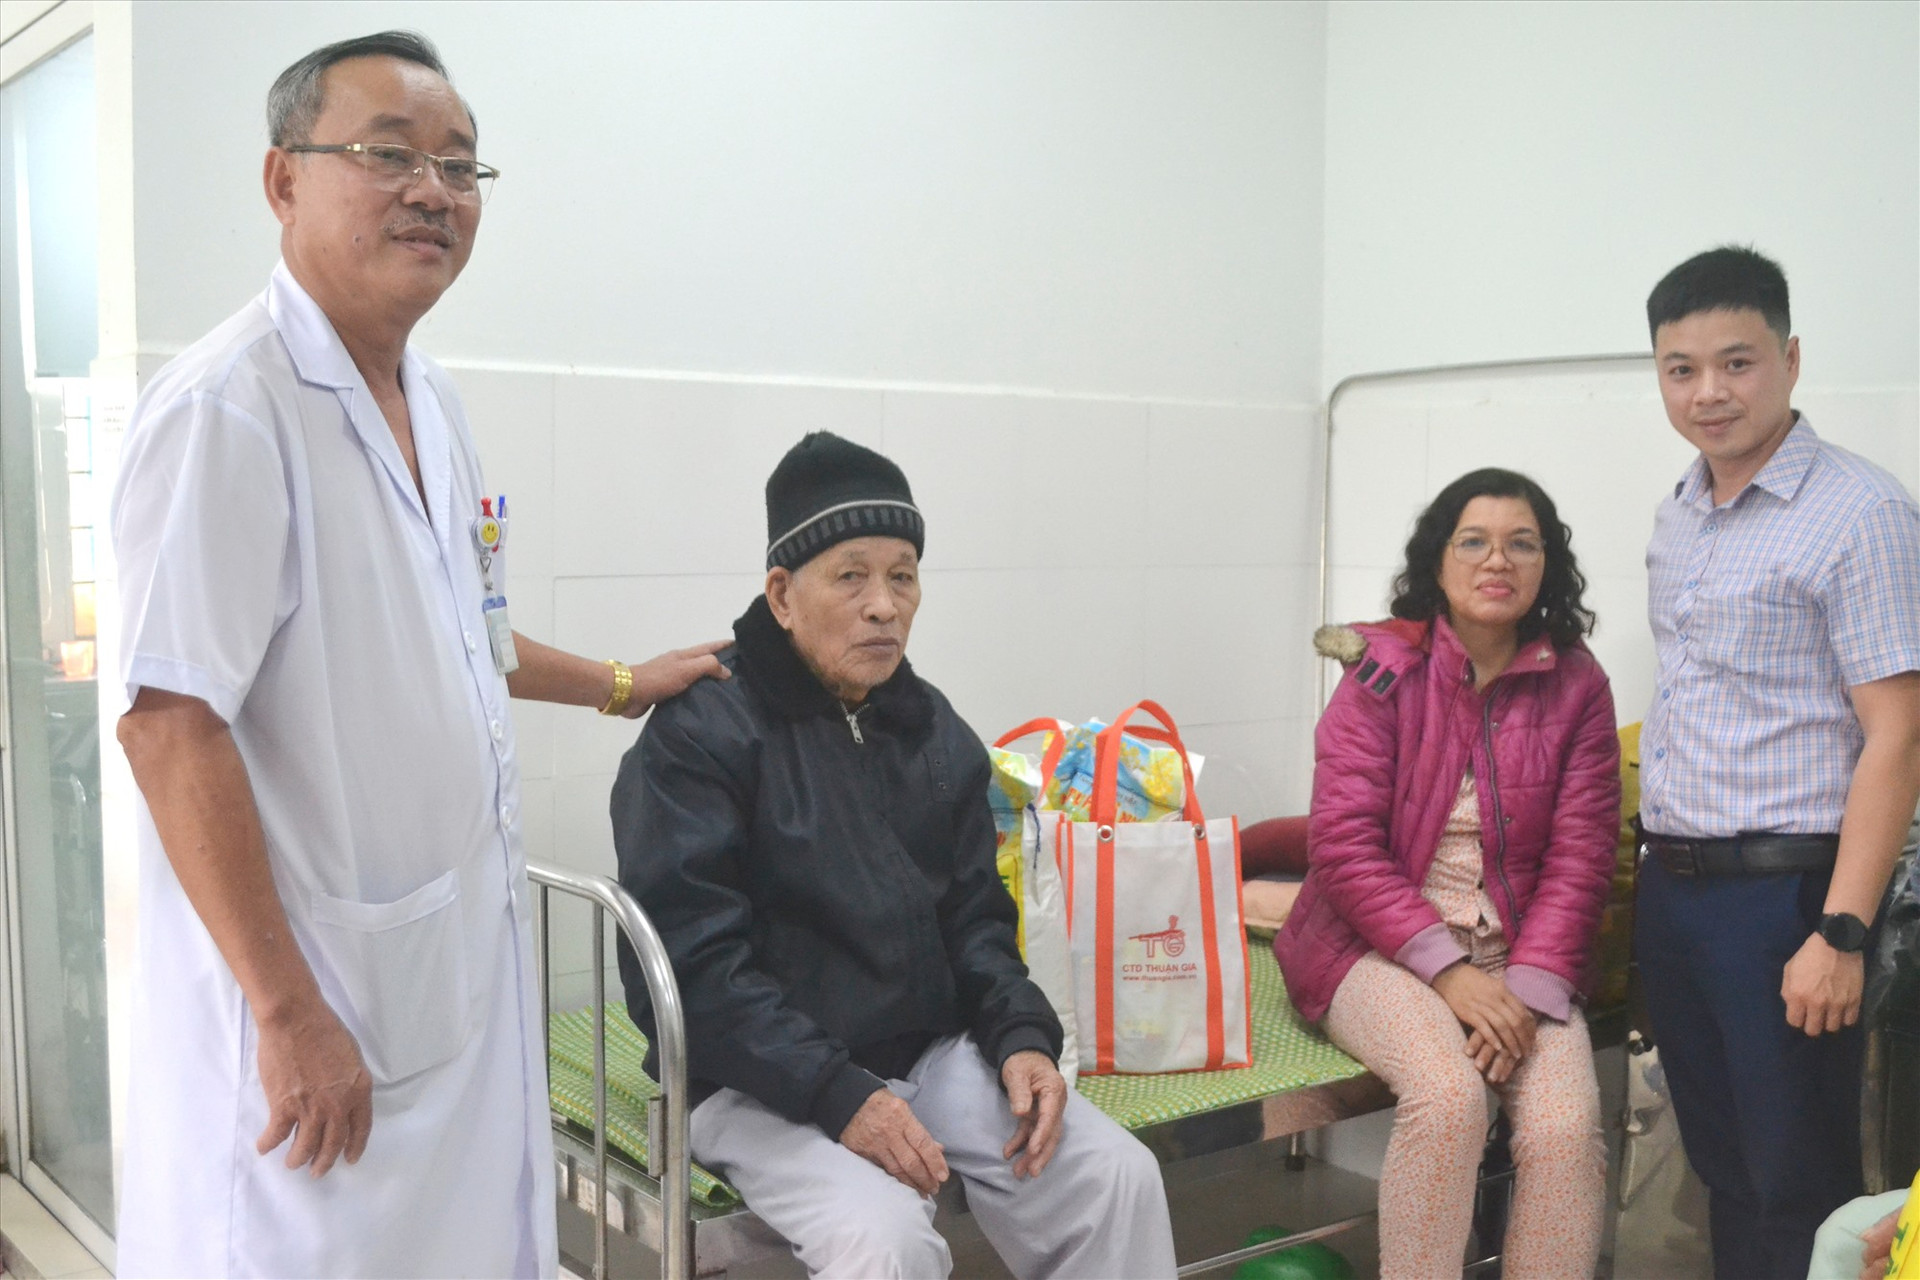 Bác sĩ Phan Minh Đức (đứng bên trái) là cầu nối giữa nhà hảo tâm với bệnh nhân NKT. Ảnh: C.T